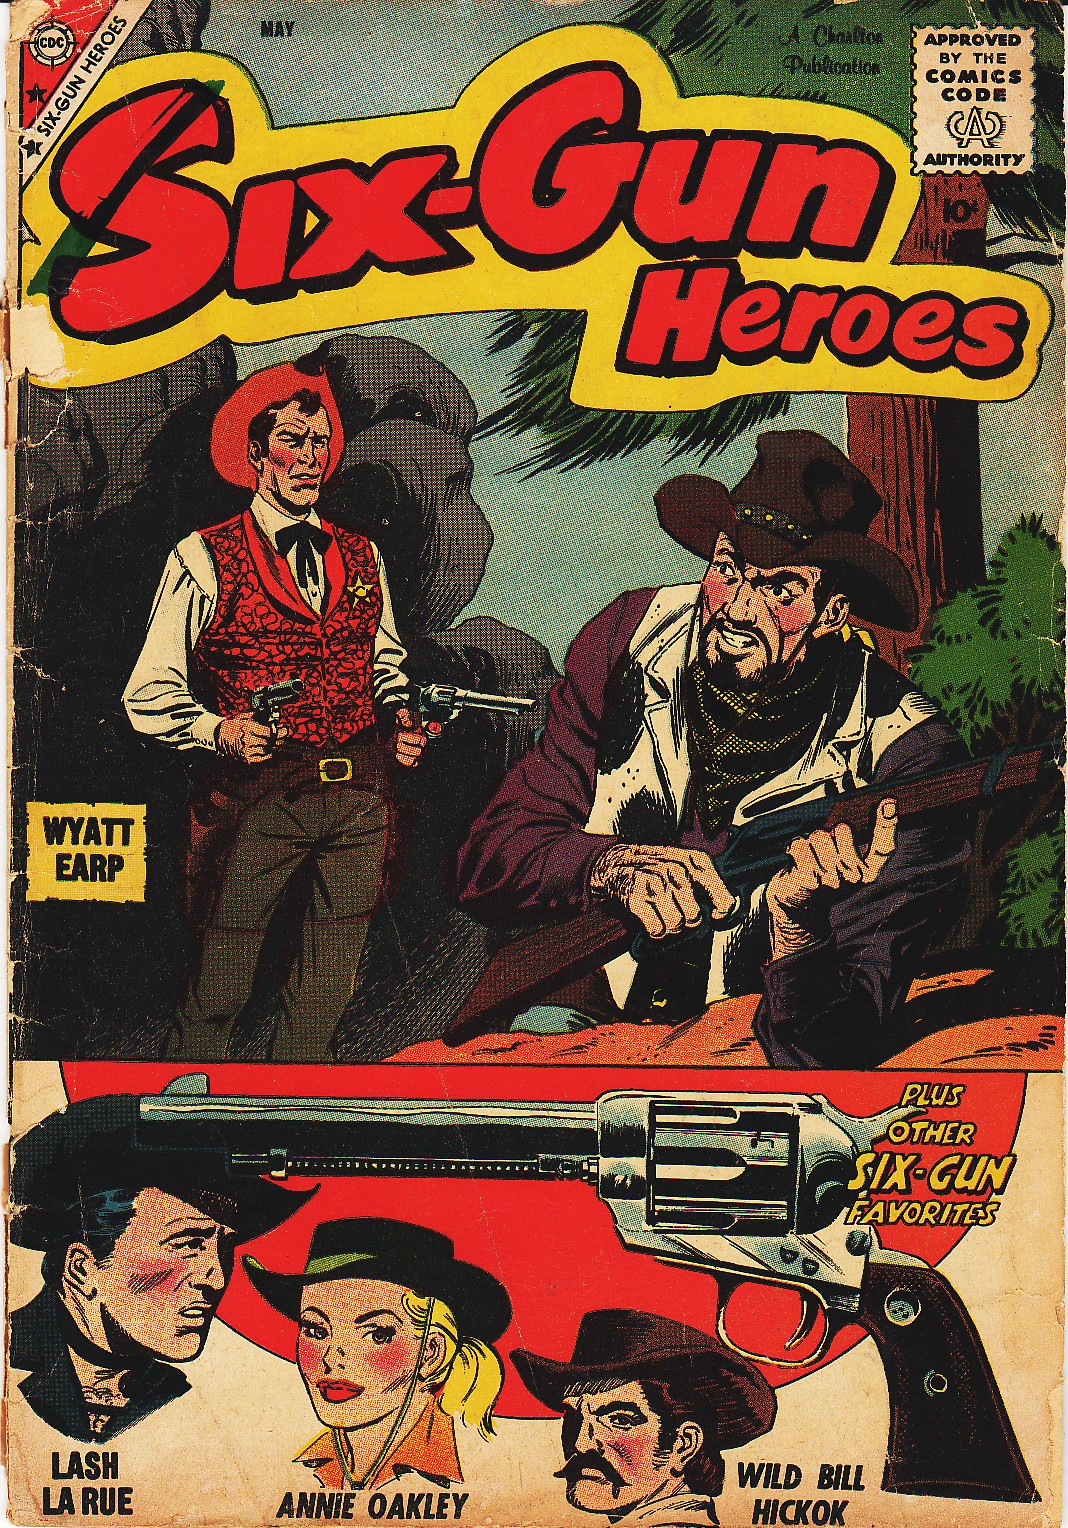 Six-Gun Heroes 51 Page 1